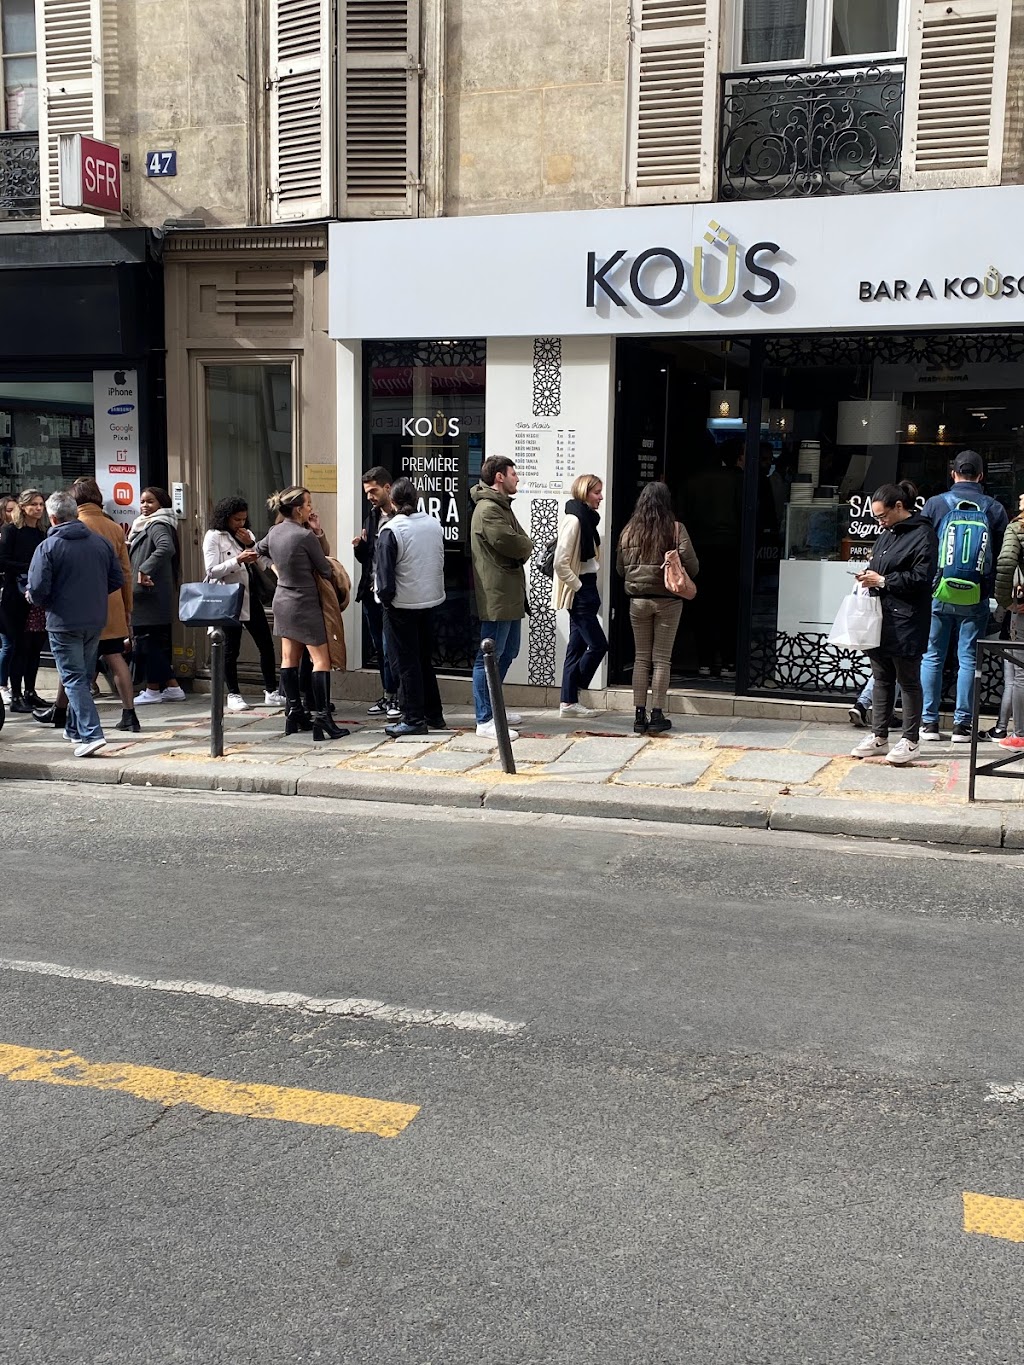 KOUS - Bar à Couscous (75008) | 47 Rue dAmsterdam, 75008 Paris, France | Phone: 01 71 97 57 35